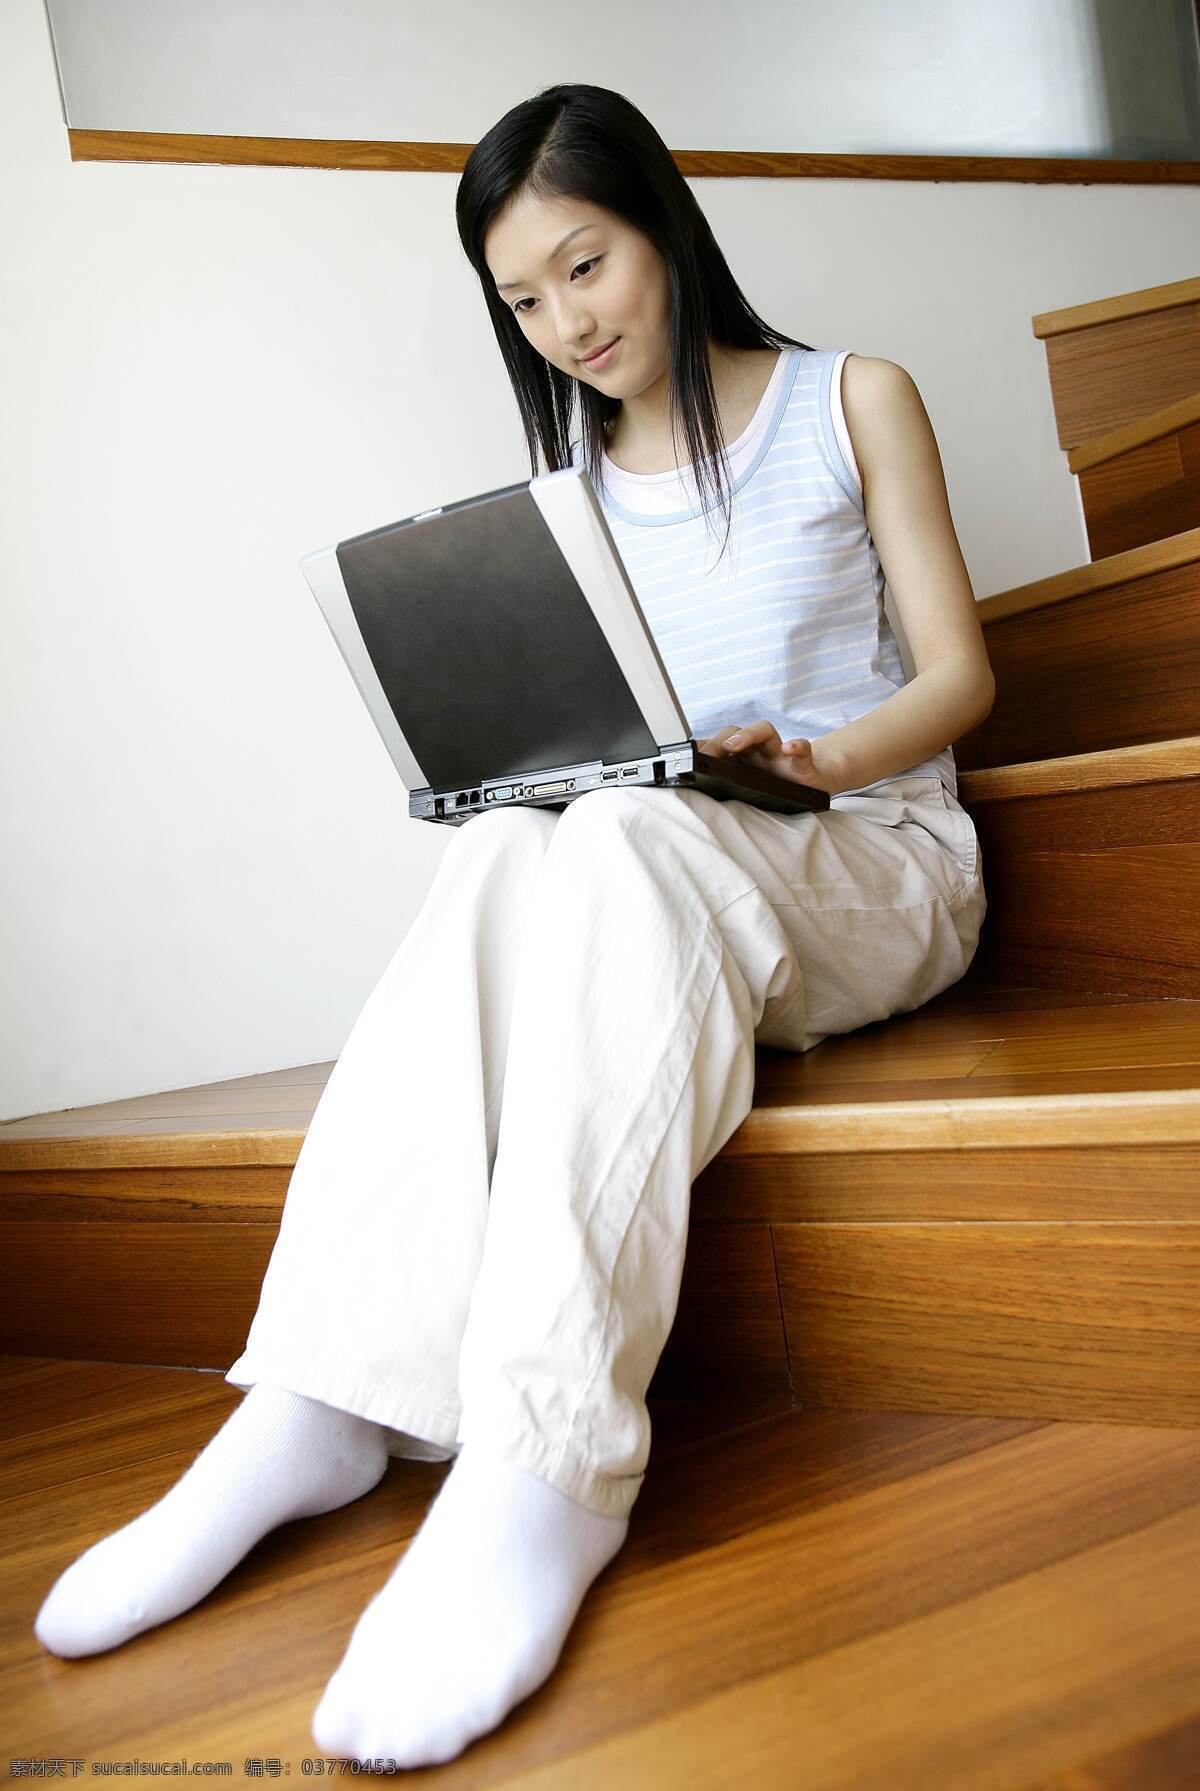 坐在 台阶 上 女人 家居生活 悠闲 轻松 放松 人物 上网 笔记本电脑 美女图片 人物图片